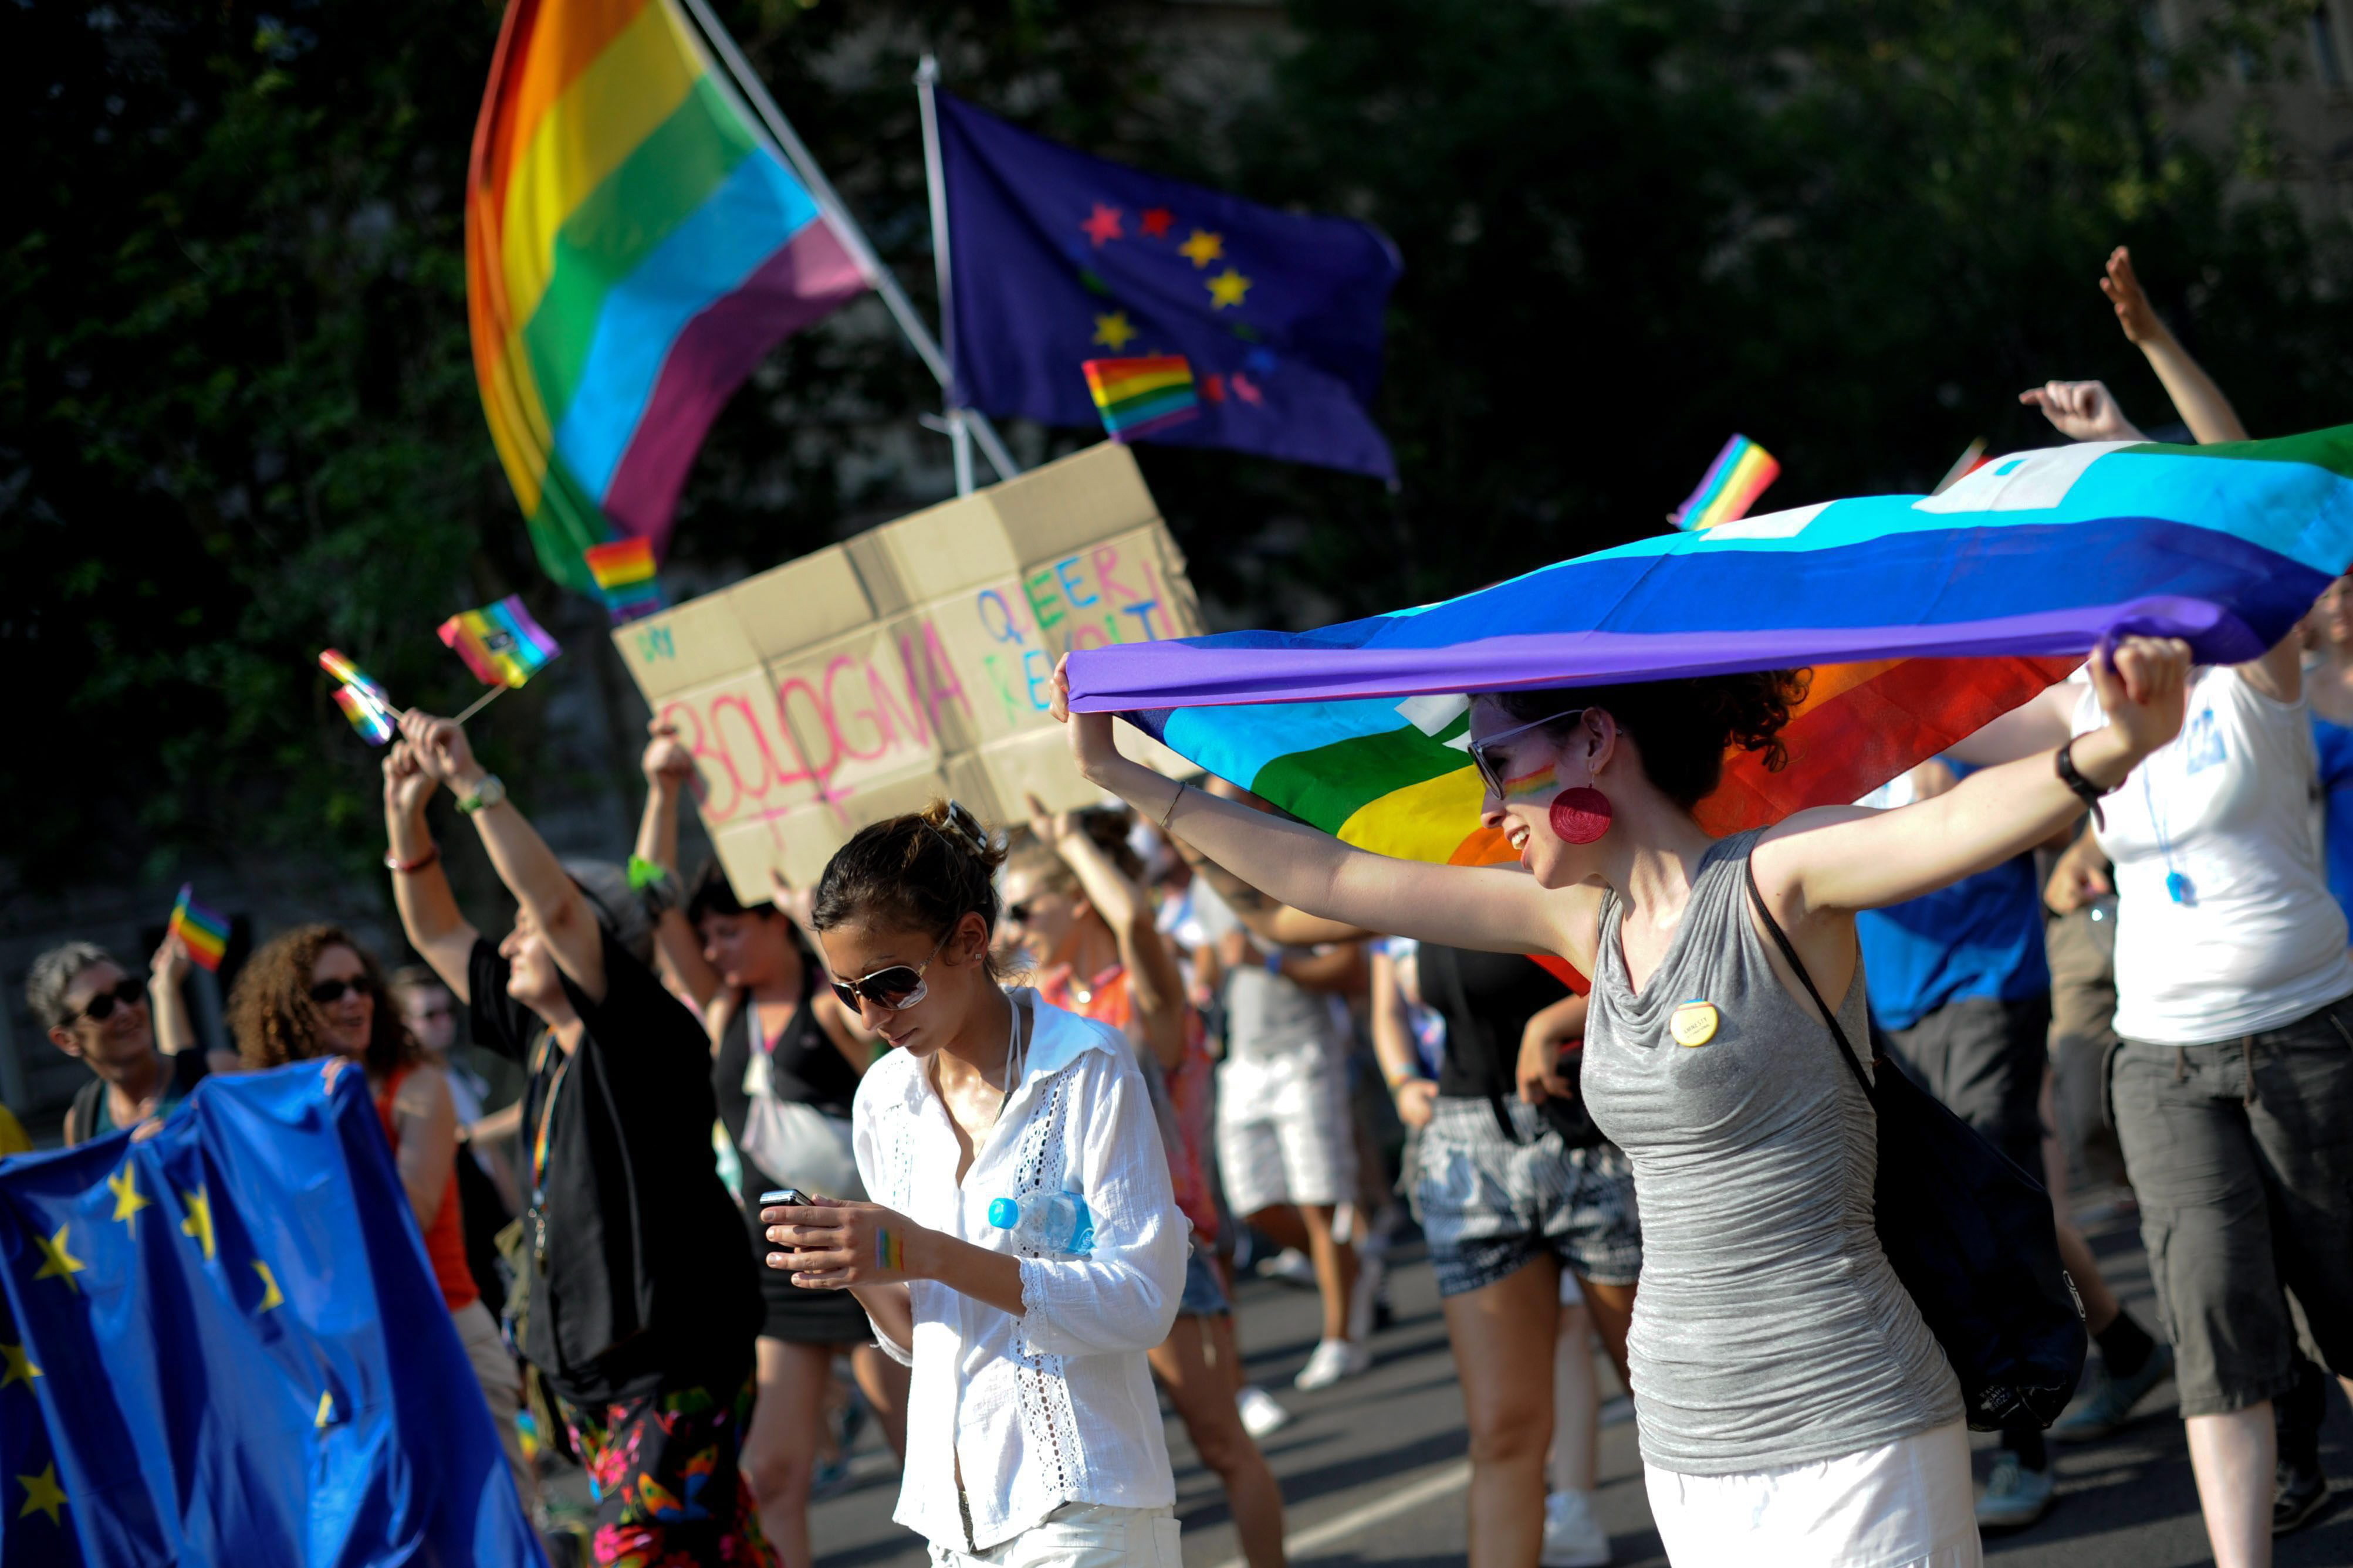 Teilnehmer des Budapest Pride schwenken Regenbogen- und EU-Fahnen (Archivbild). | picture alliance / dpa